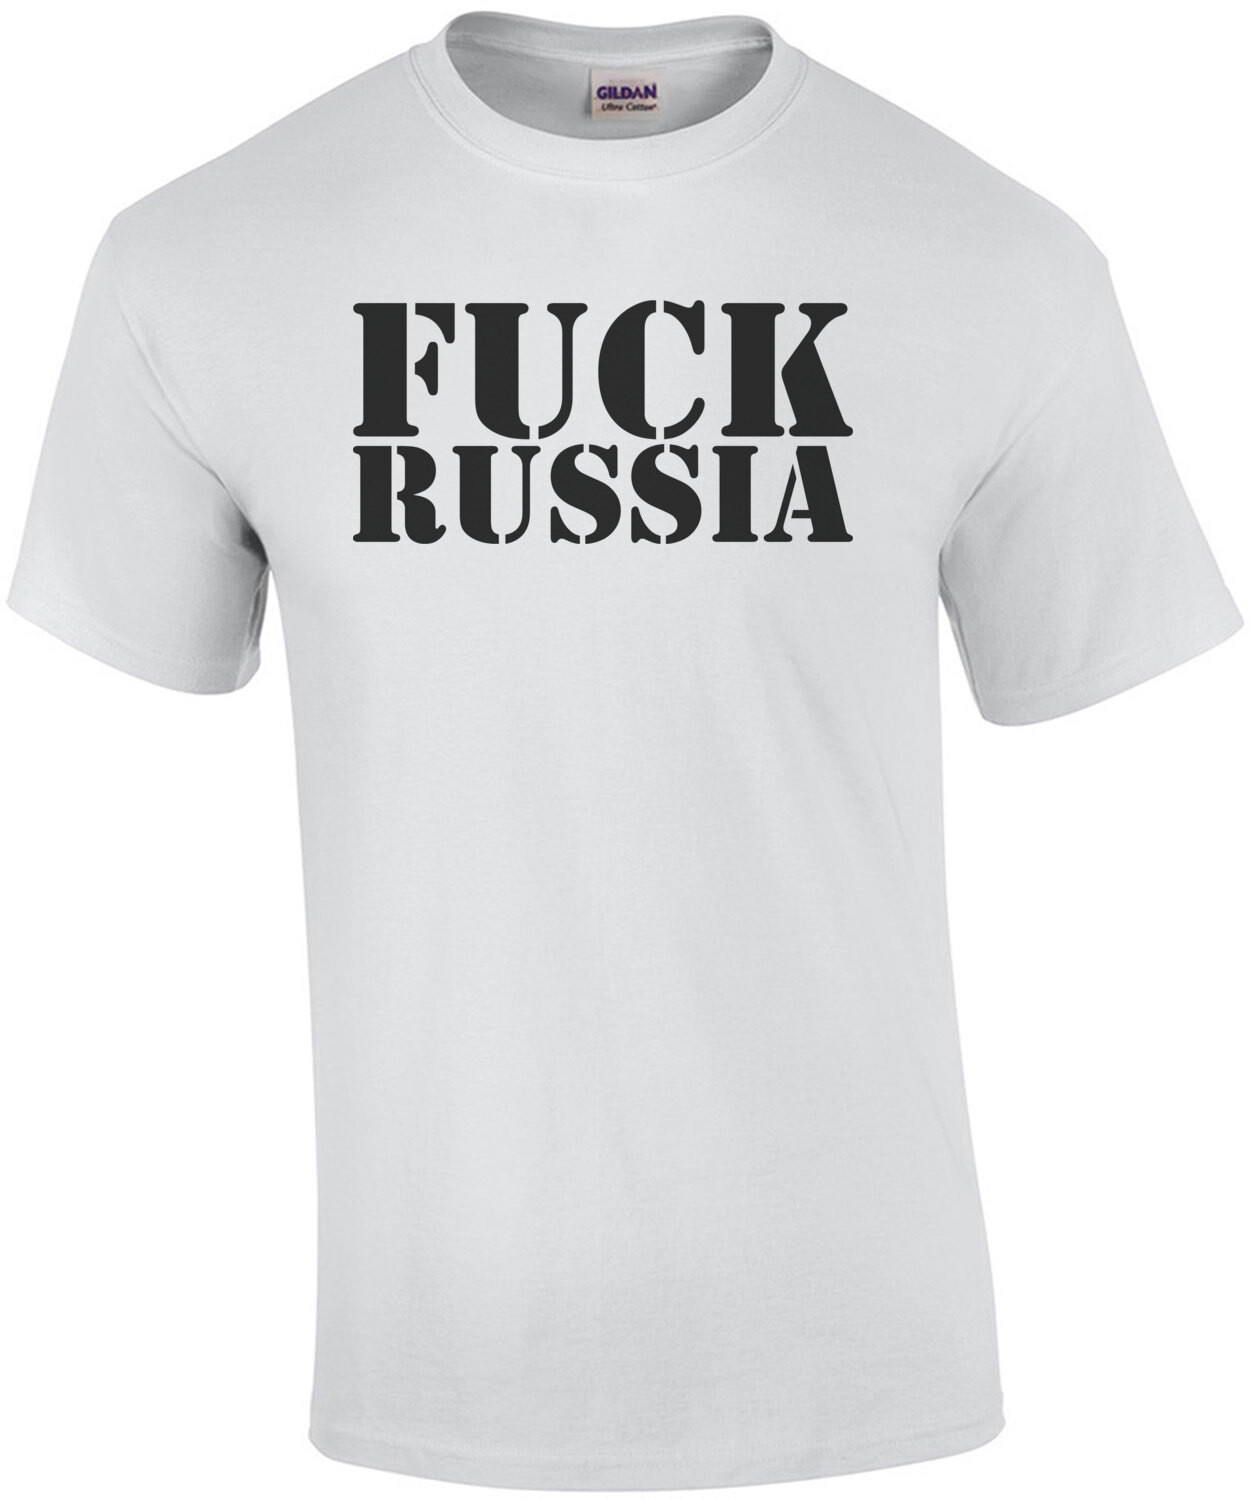 Fuck Russia Shirt